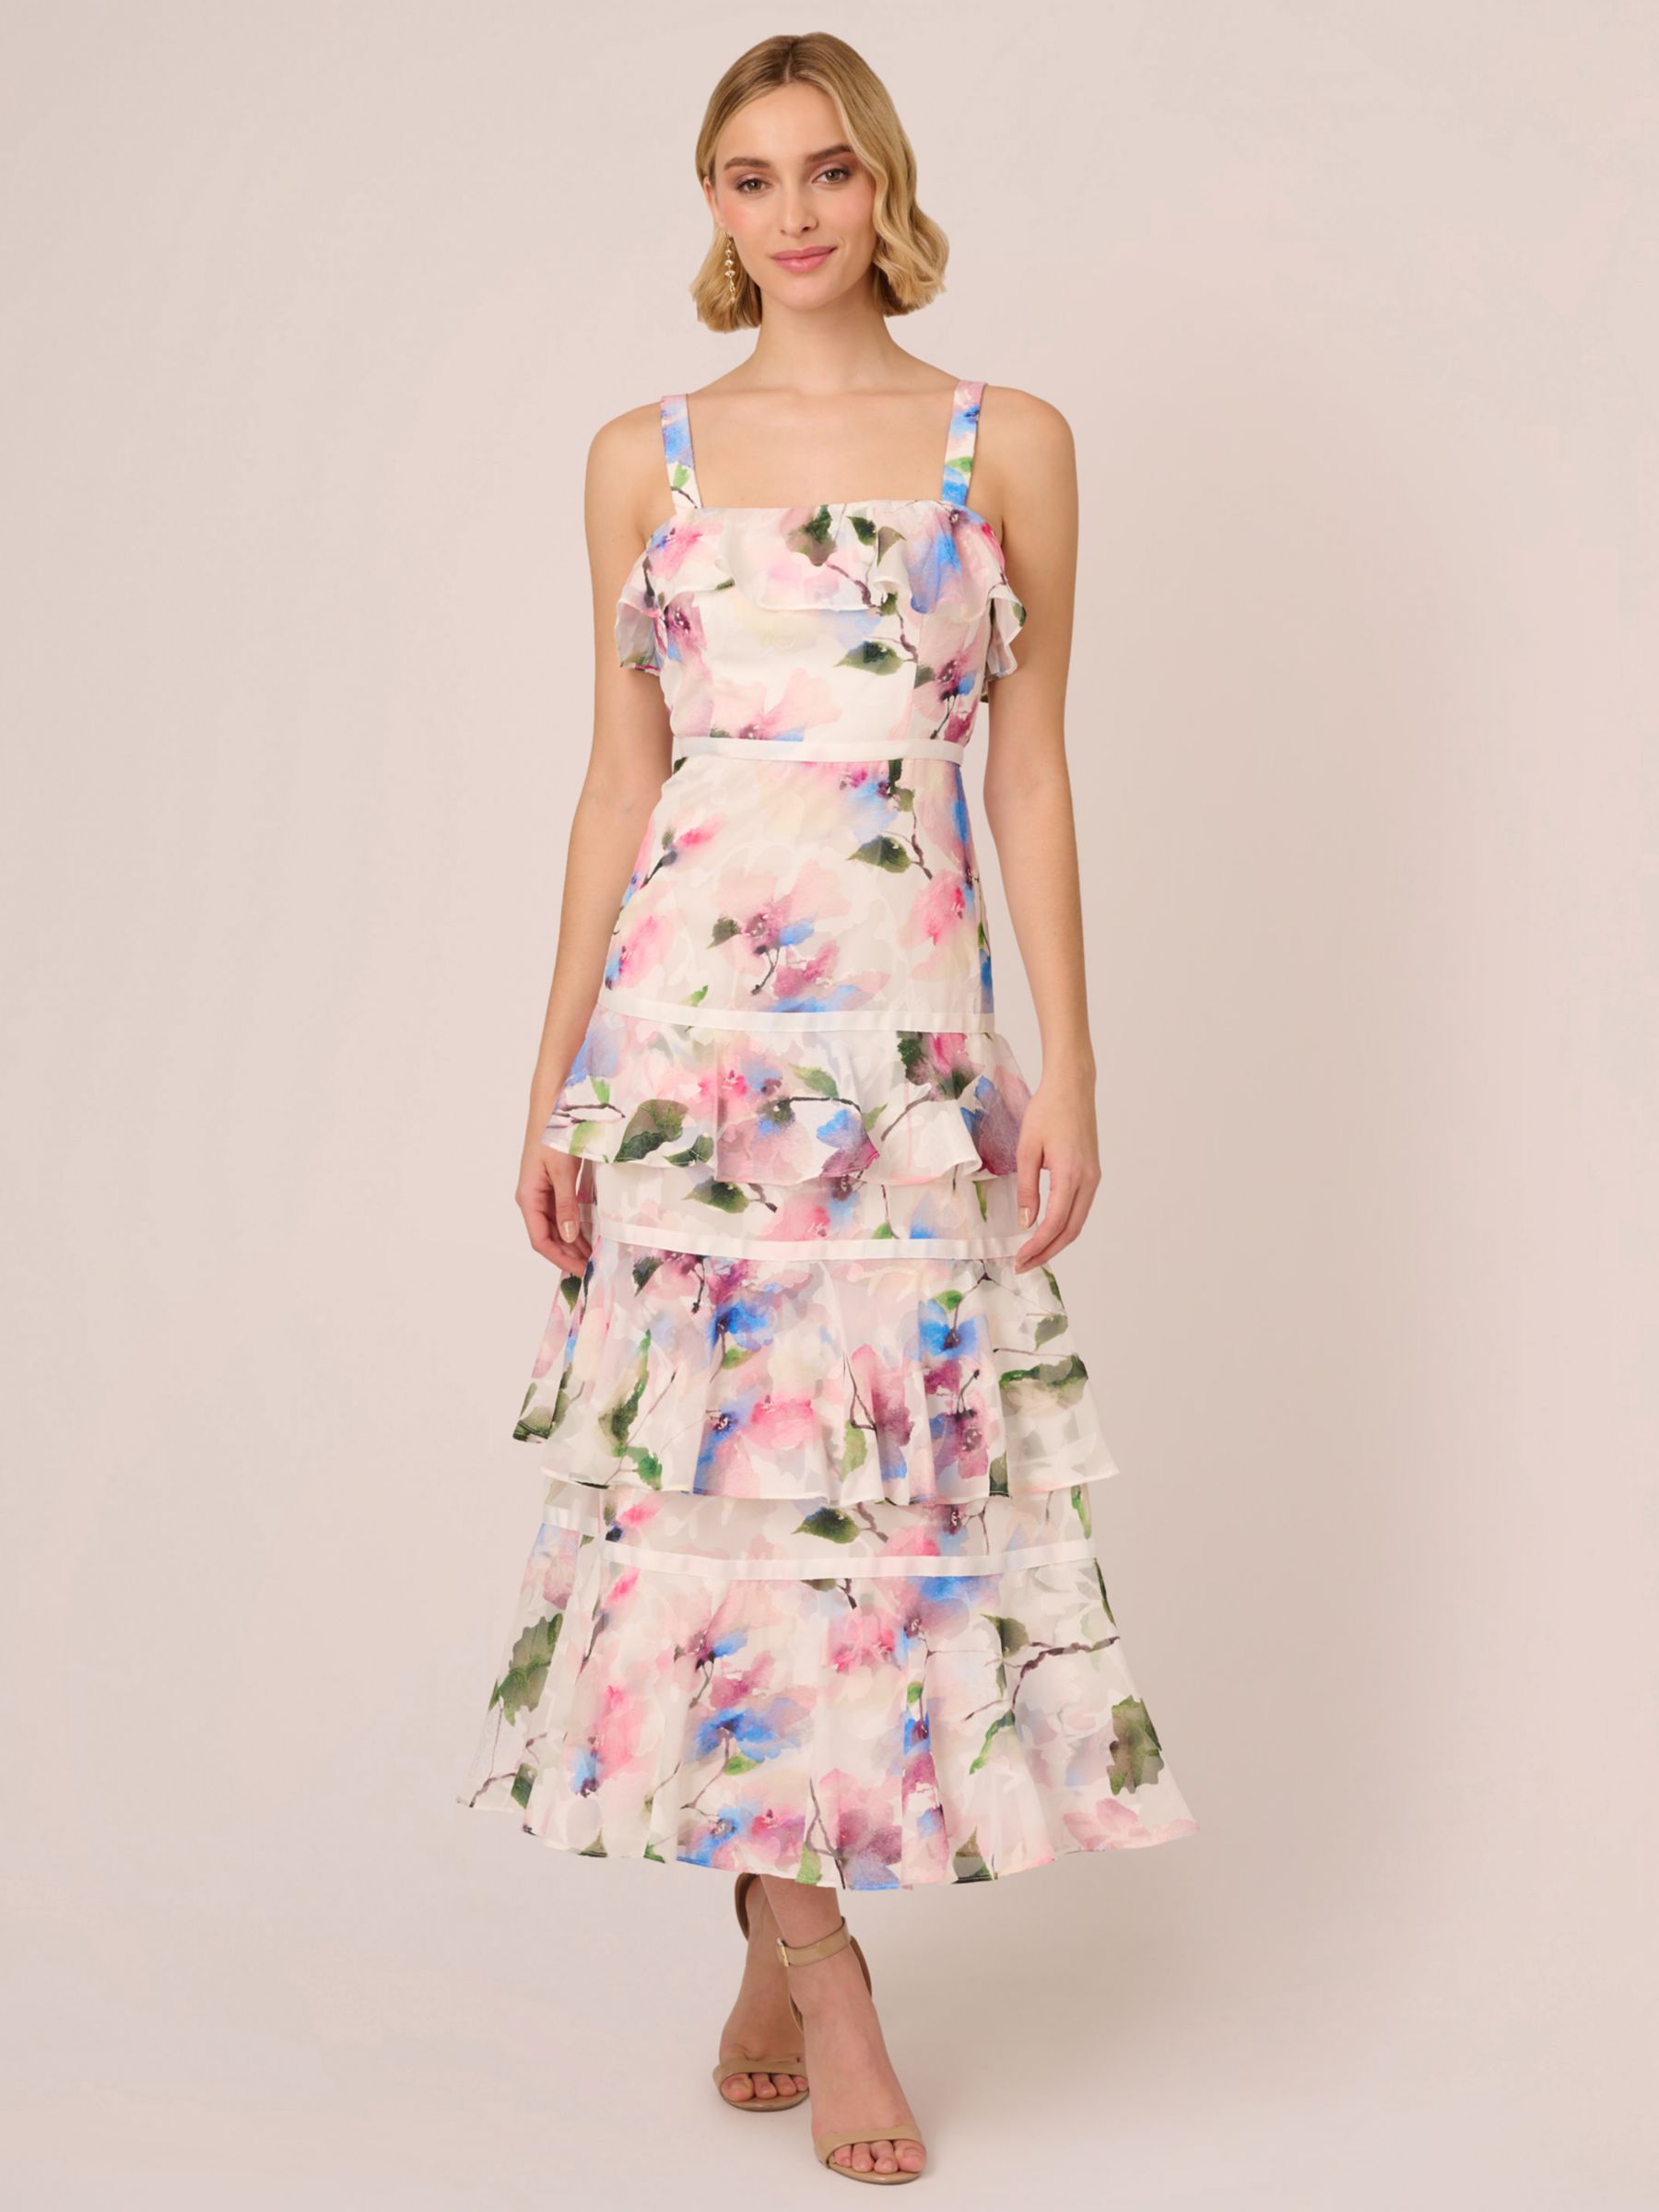 Adrianna Papell Chiffon Maxi Dress, Ivory/Pink/Multi, 6